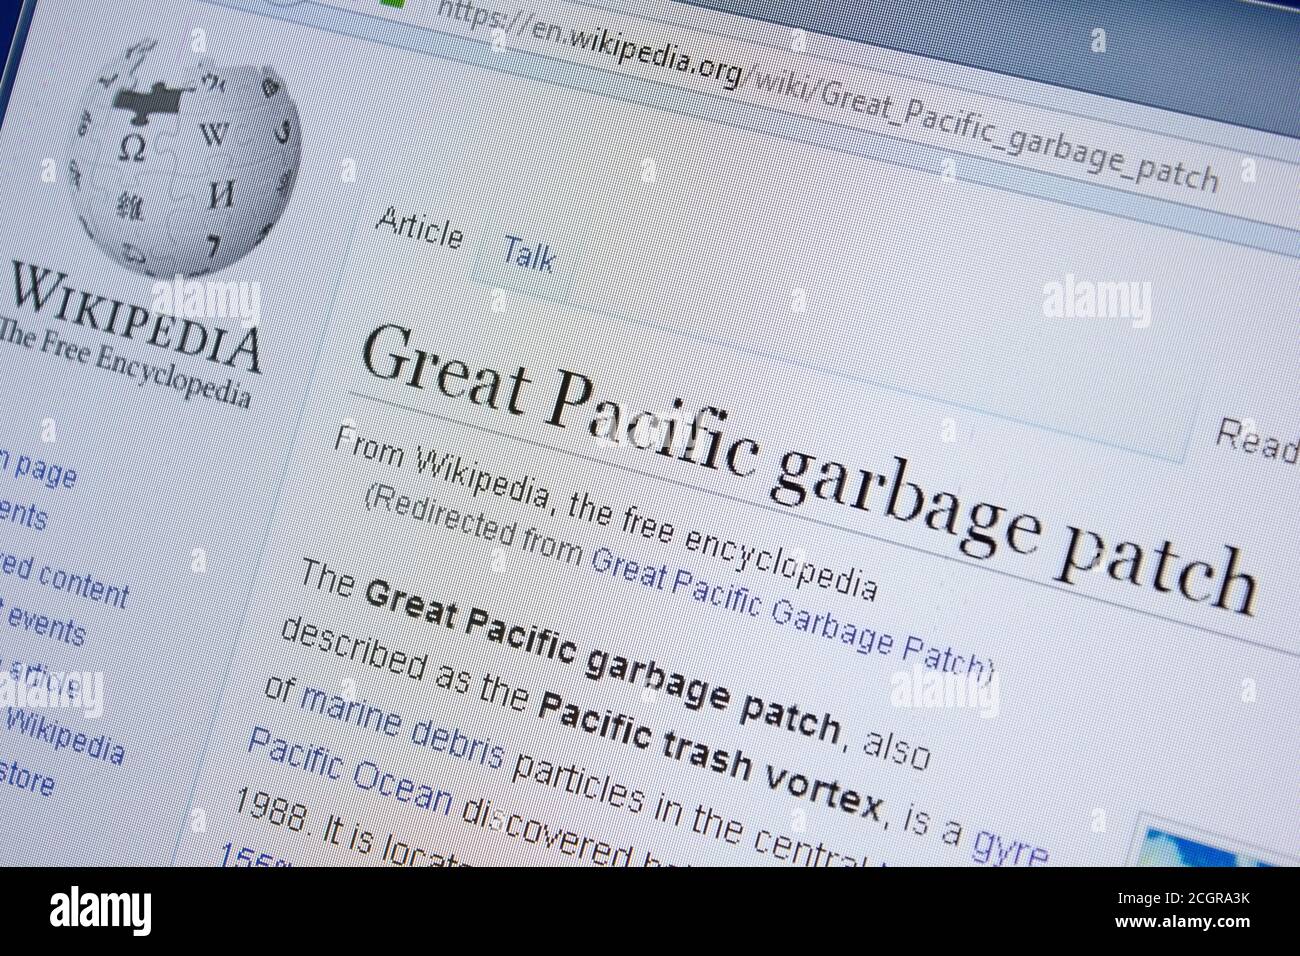 Ryazan, Russie - 09 septembre 2018 - page Wikipédia à propos de la zone d'ordures Great Pacific sur un écran de PC Banque D'Images